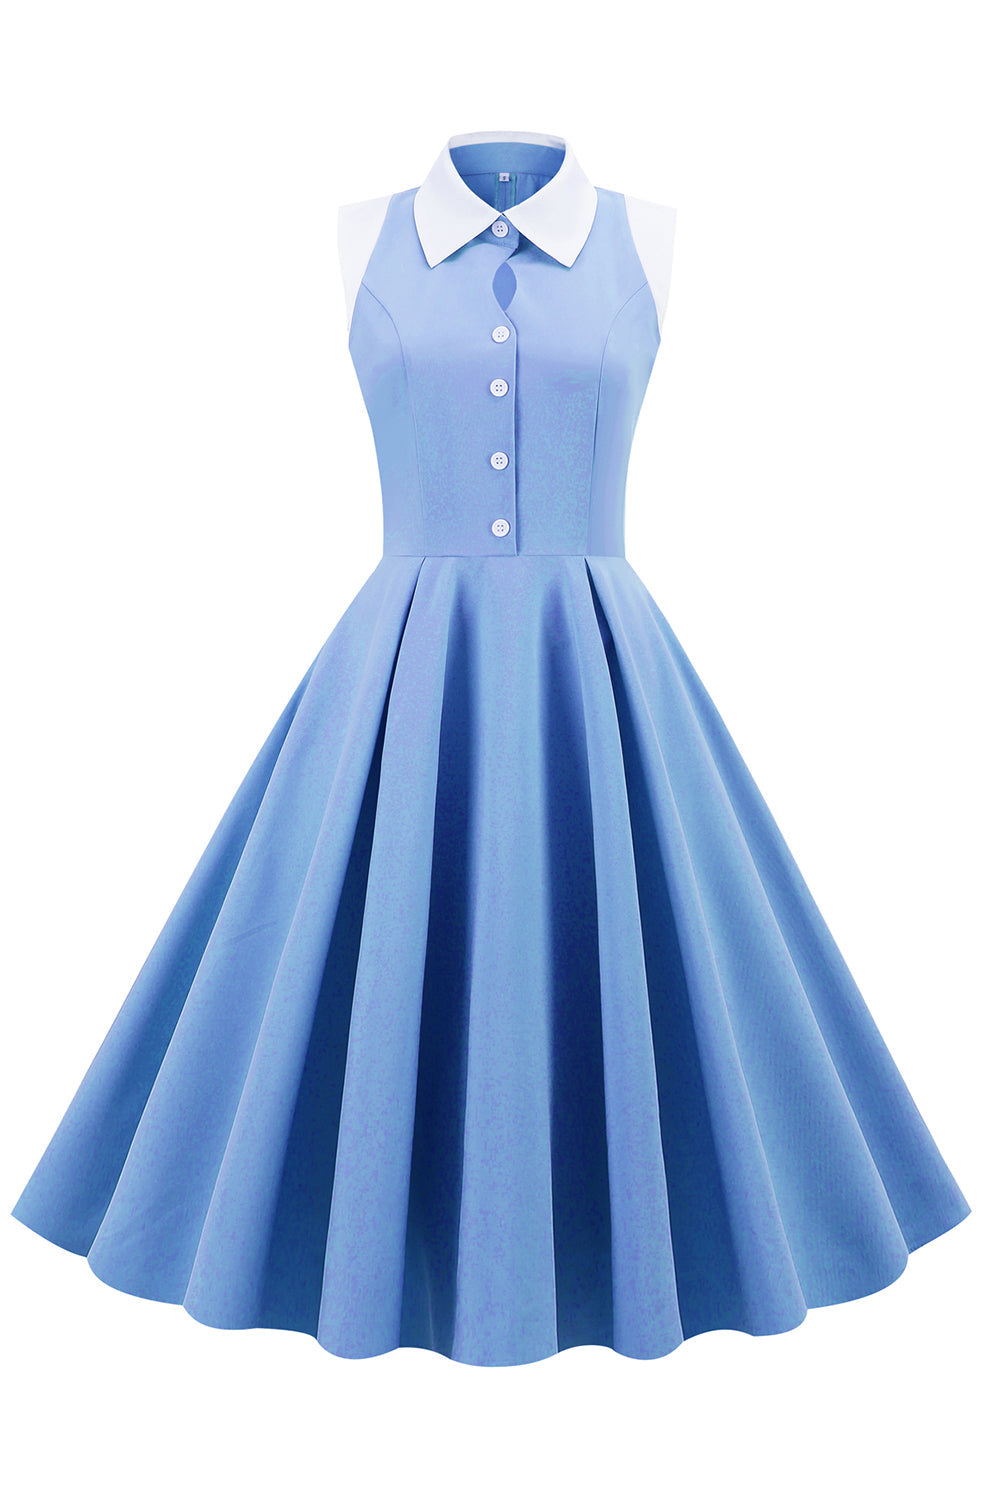 Robe swing vintage bleue des années 1950